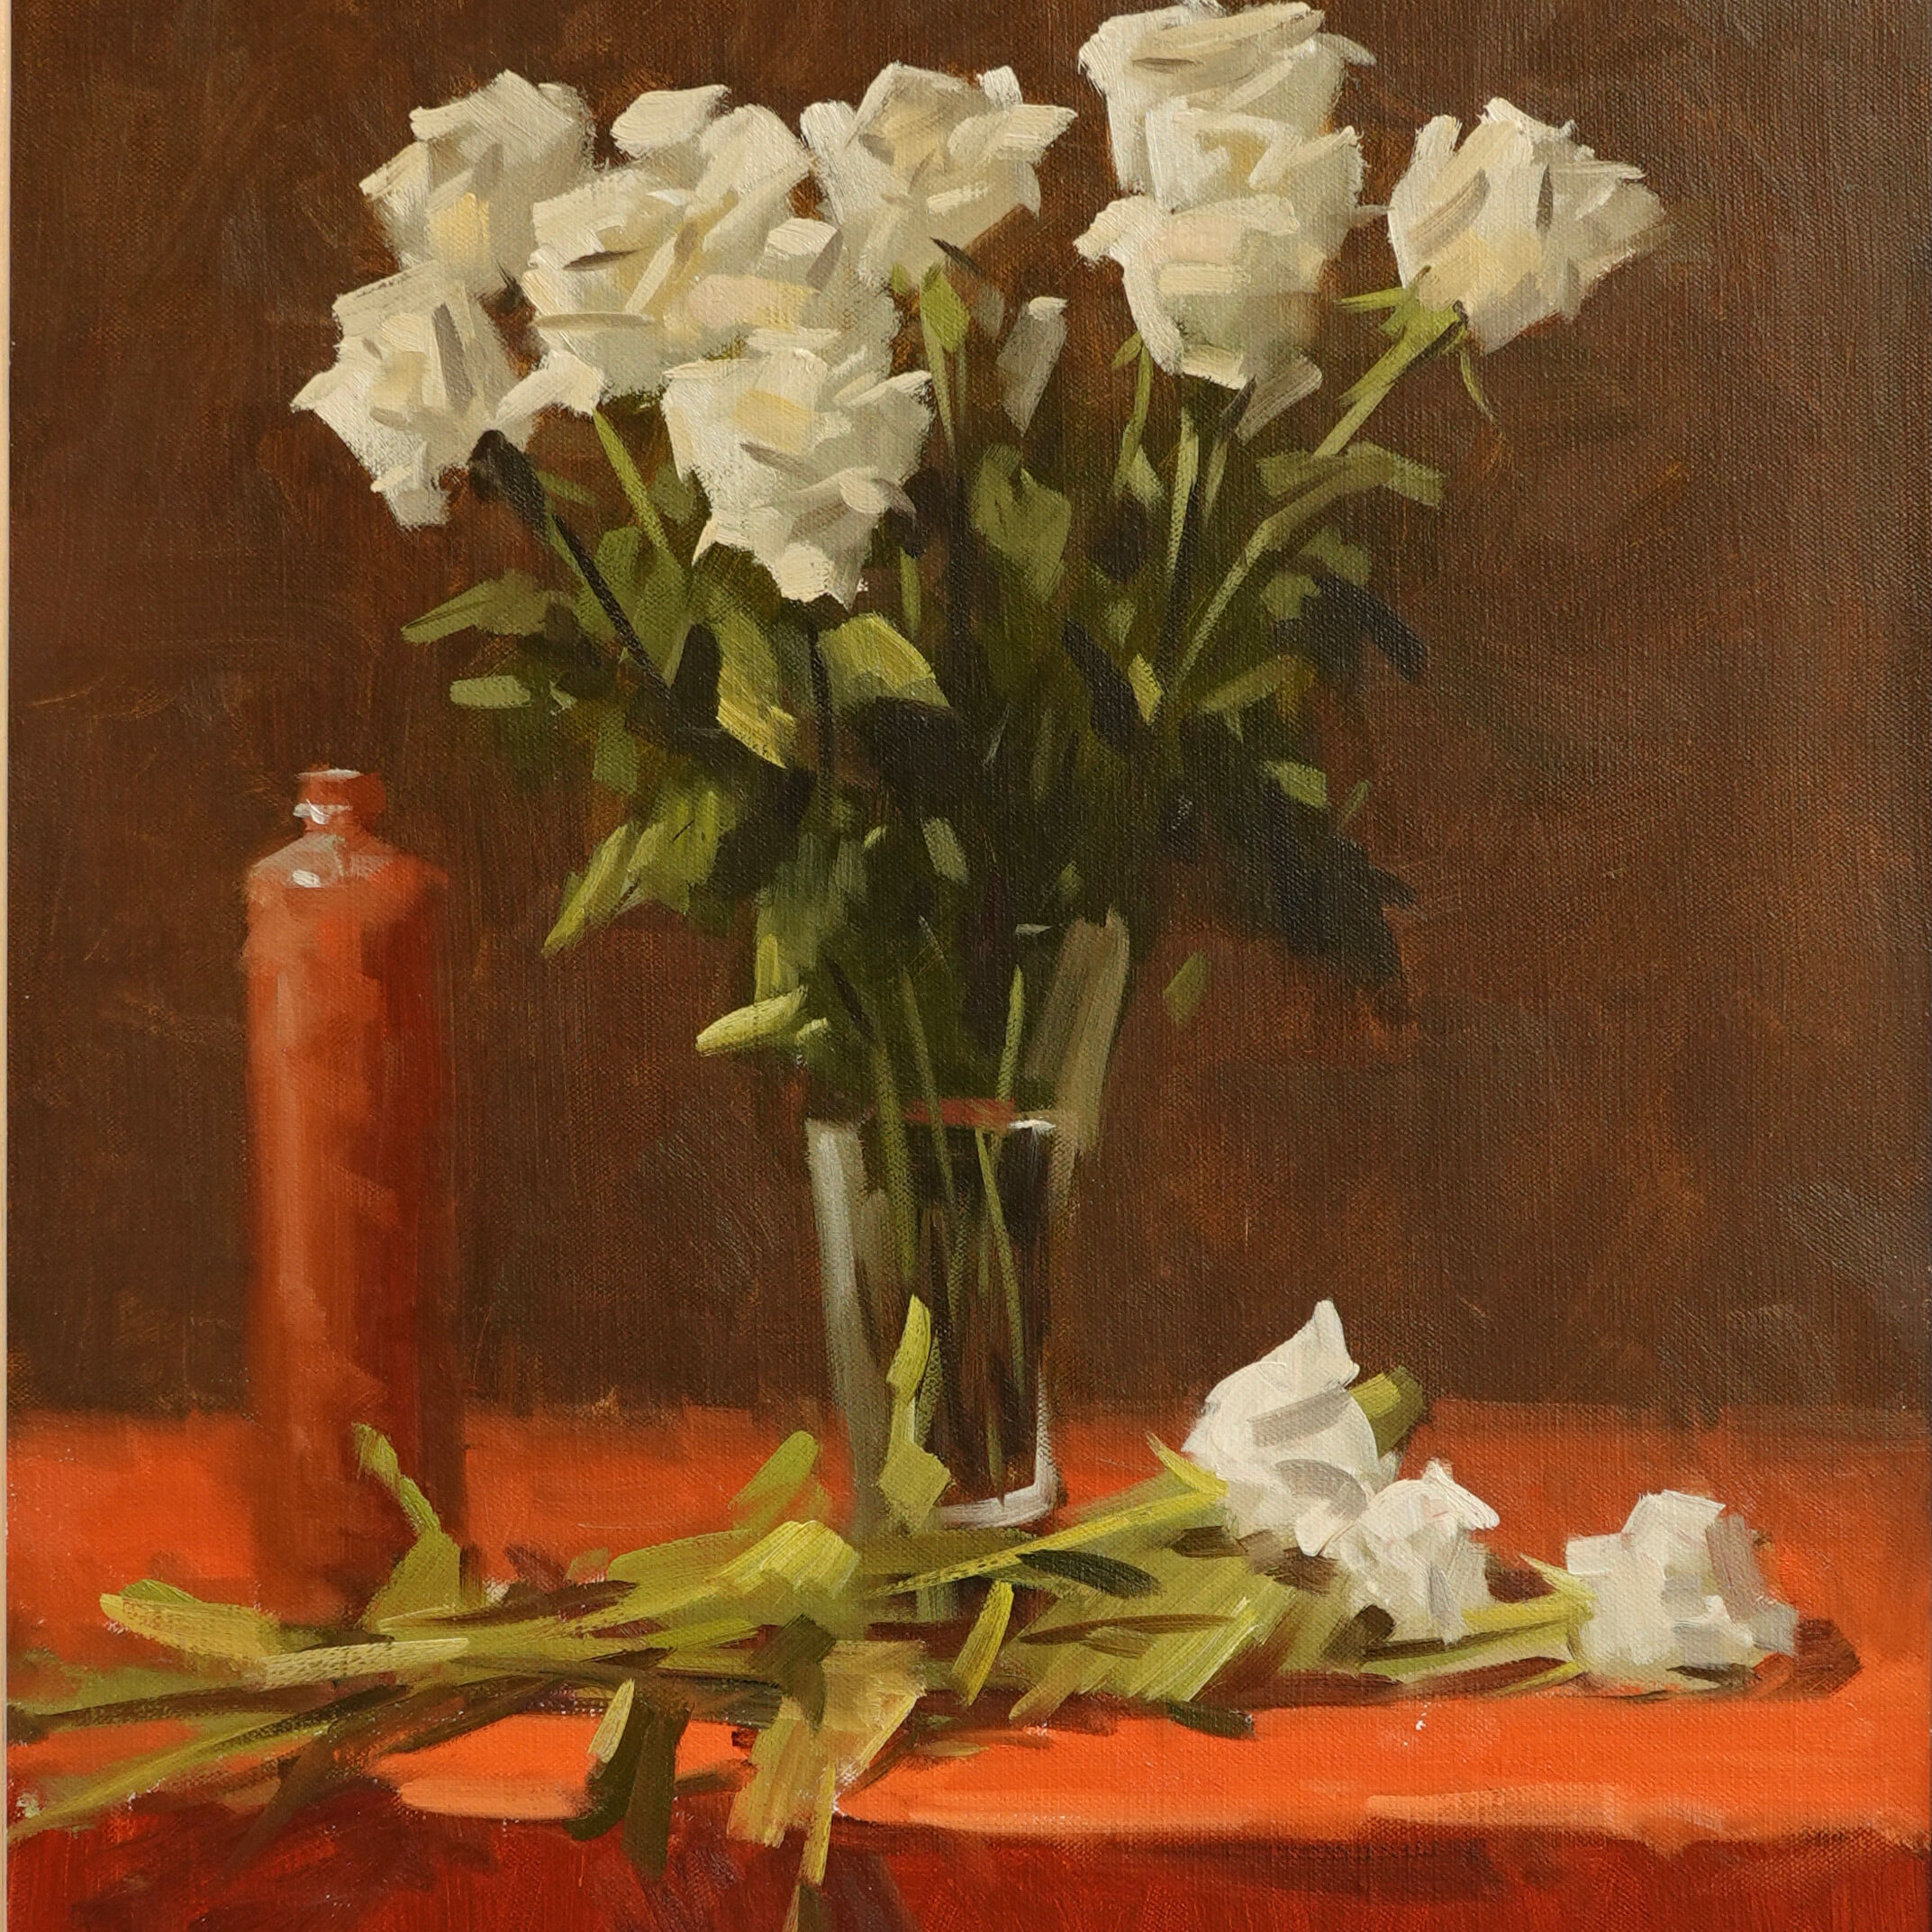 63. Ray Hewitt - White Roses